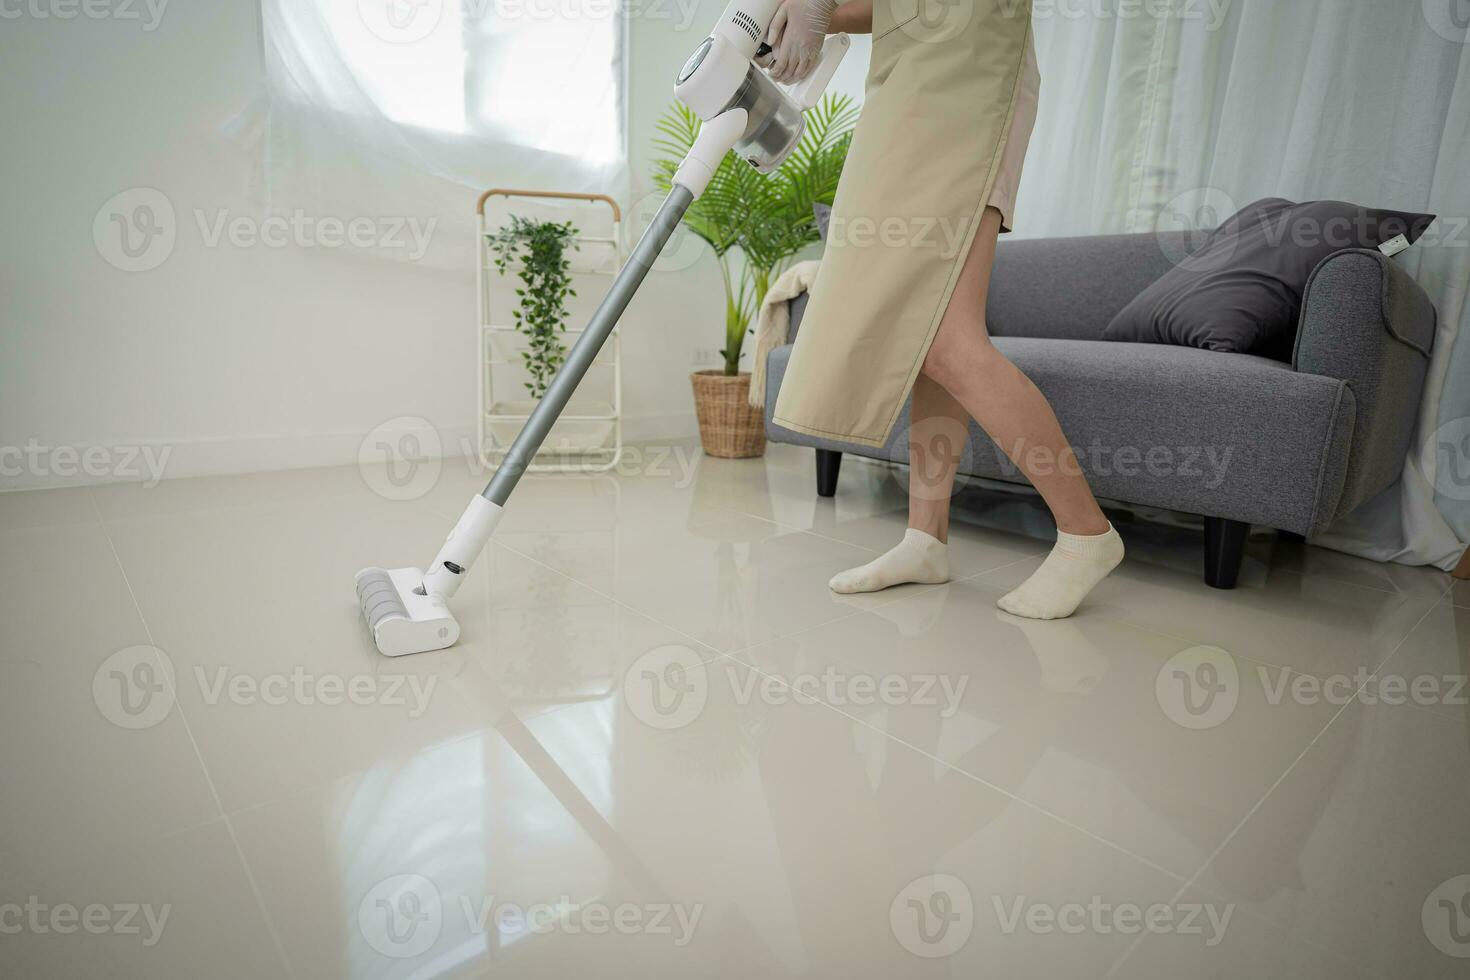 hermosa asiático mujer limpieza vivo habitación en casa barriendo el piso utilizando microfibra mojado fregona almohadilla. deberes limpieza rutina. Doméstico casa acuerdo concepto foto